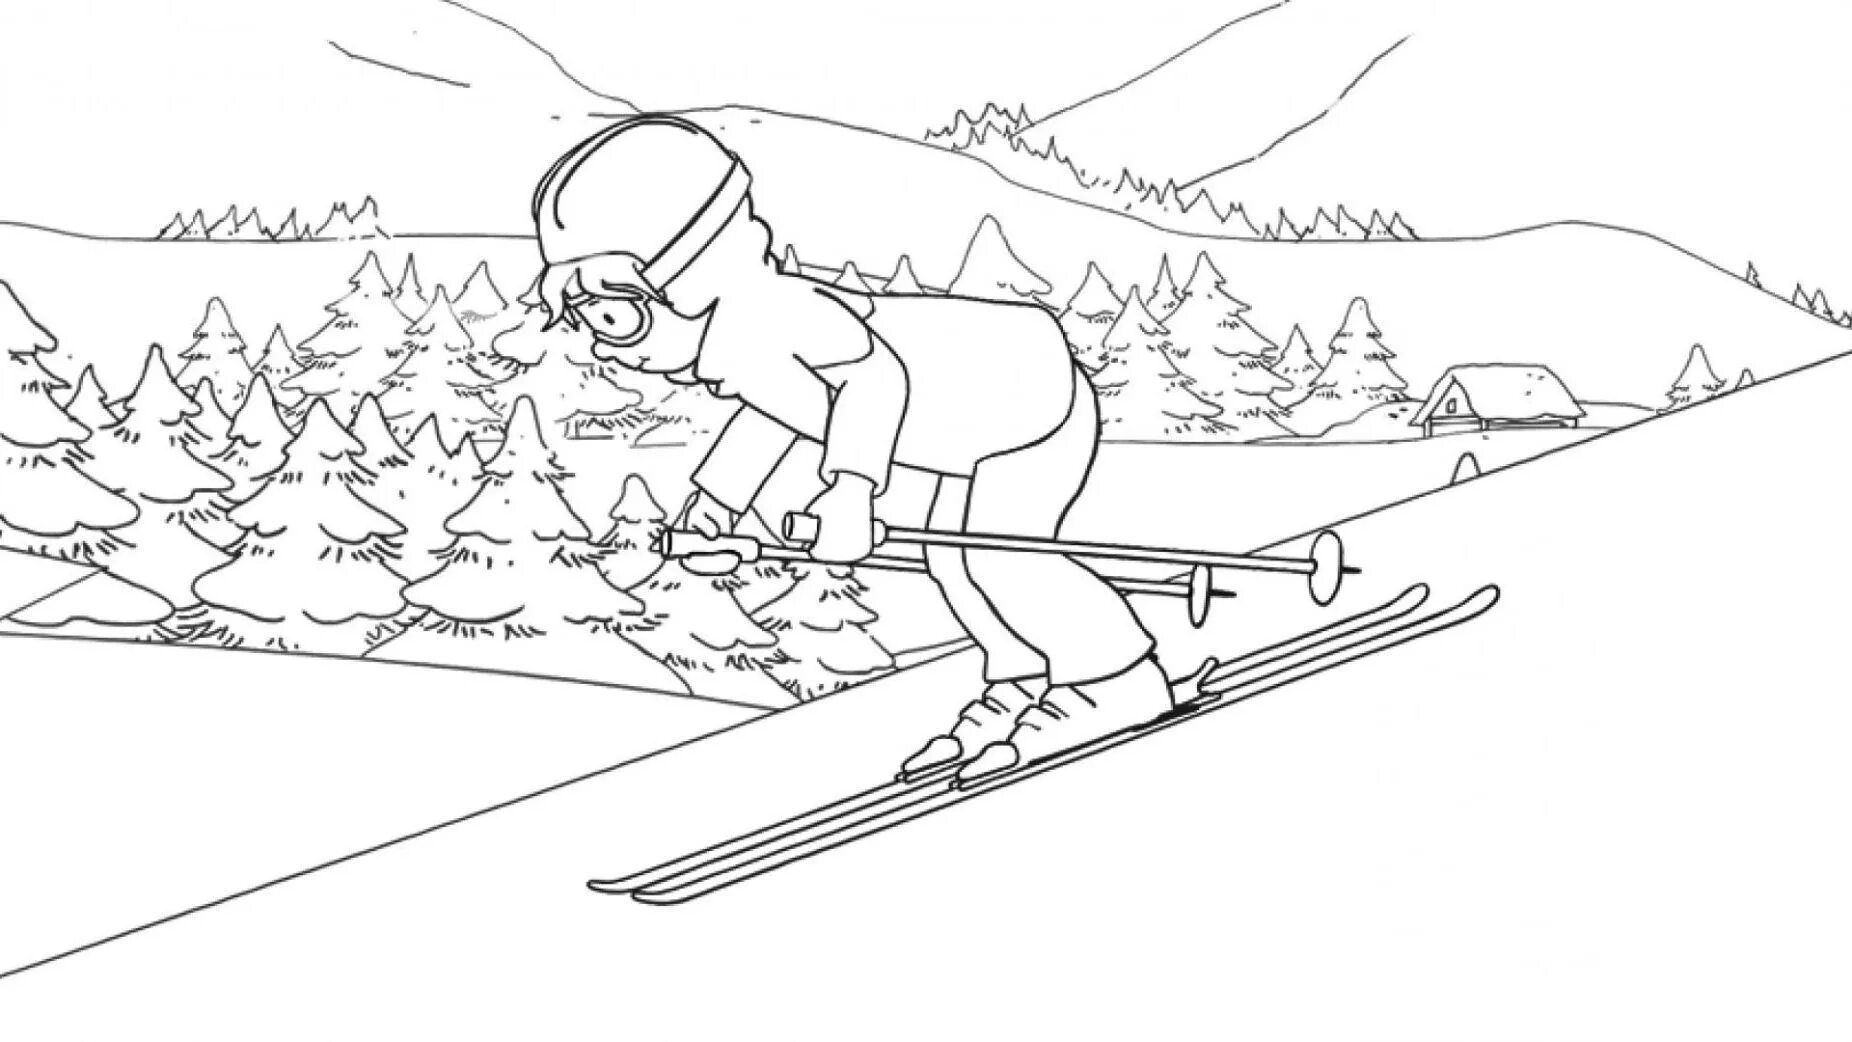 Skier #3